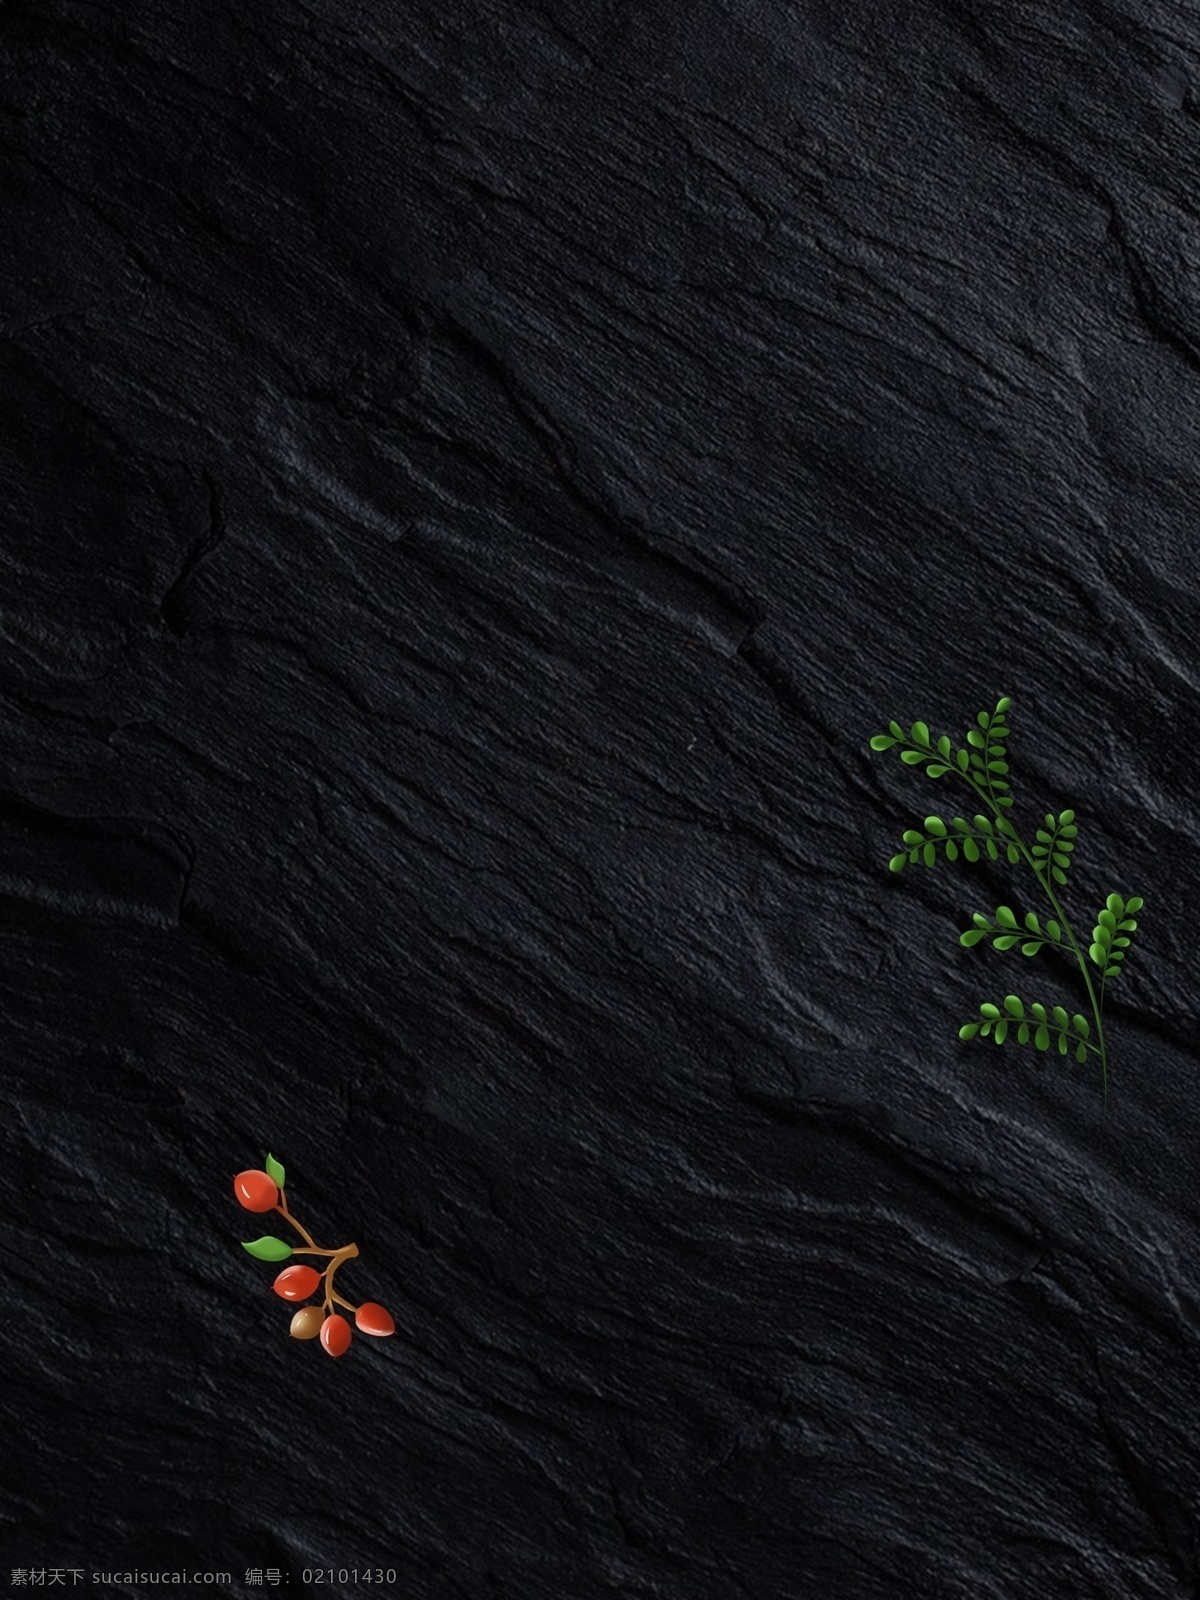 质感 黑色 磨砂 广告 背景 广告背景 植物 水果 手绘 果子